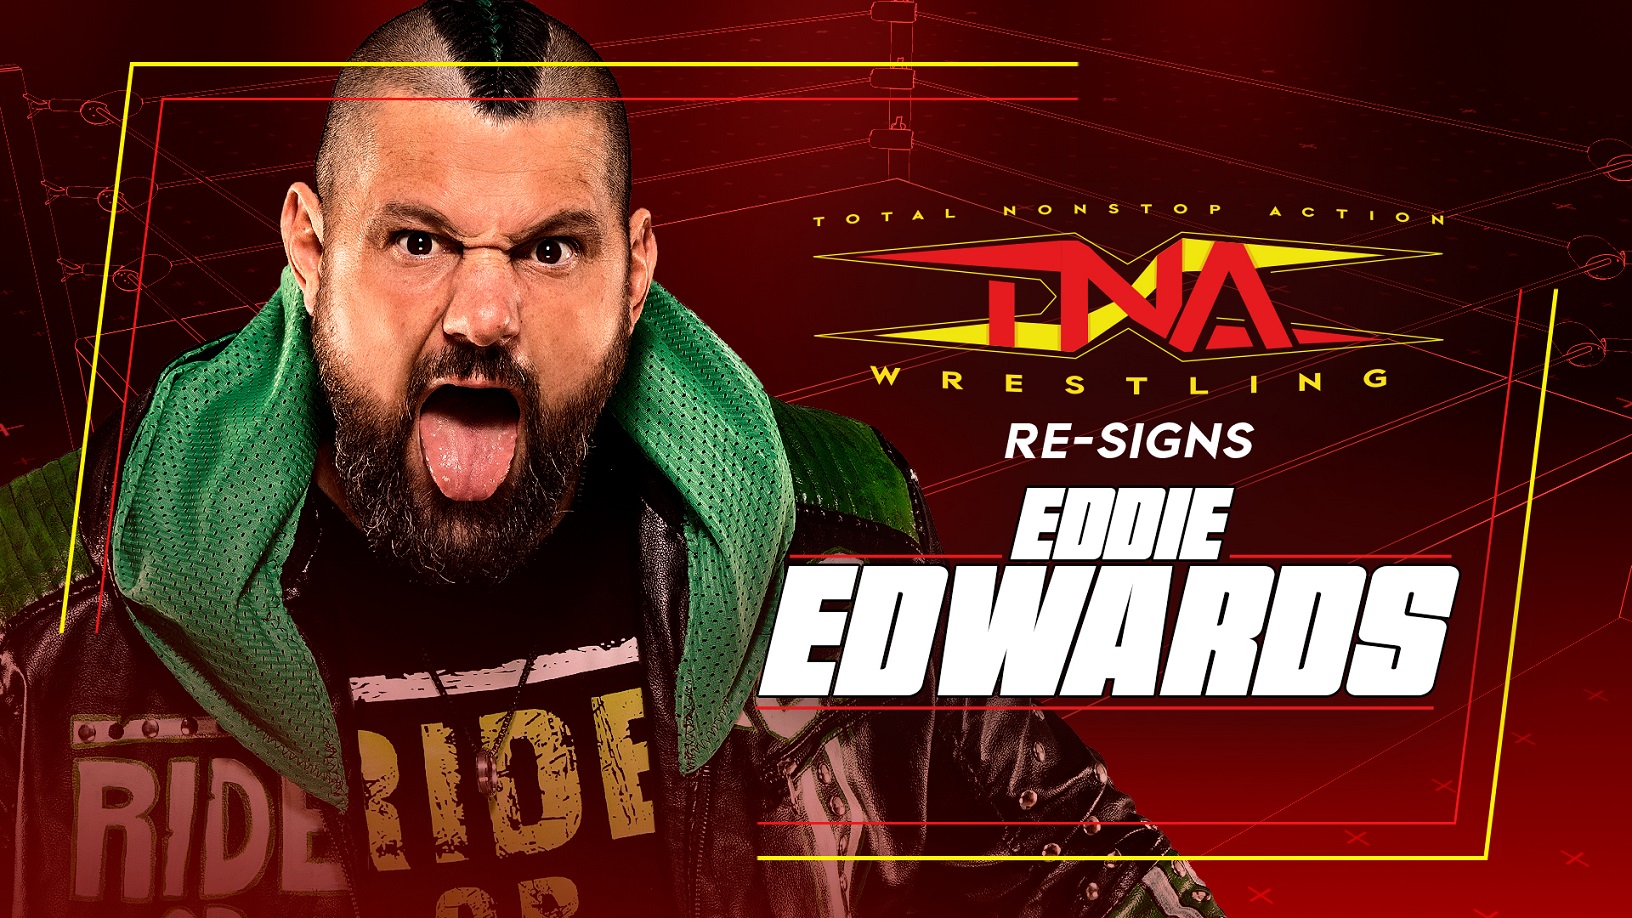 Eddie Edwards Re-Signs With TNA Wrestling – TNA Wrestling